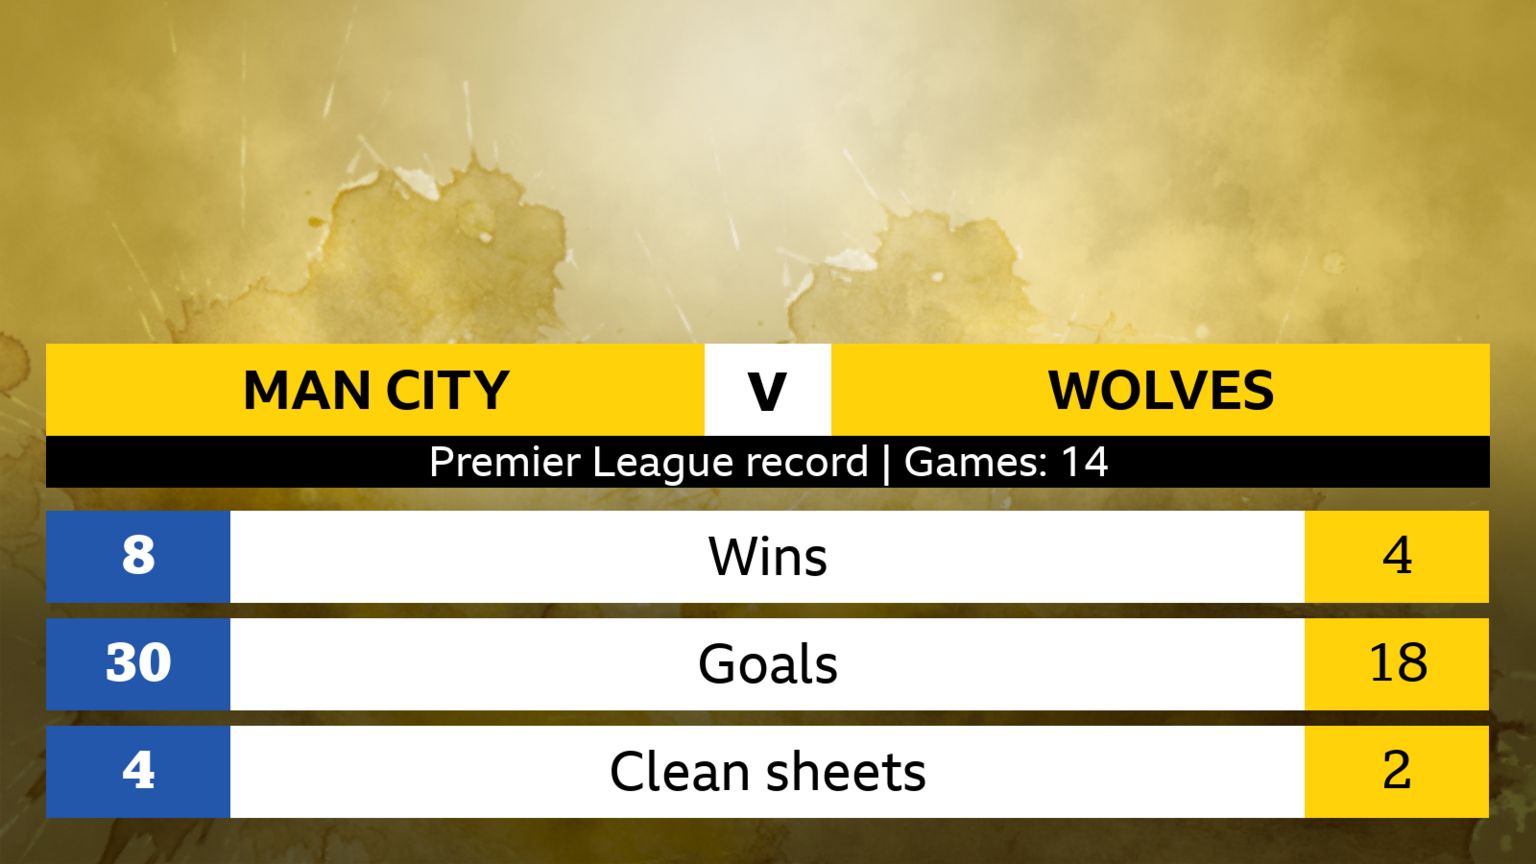 Man City v Wolves Premier League record (14 games); Man City - 8 wins, 30 goals, 4 clean sheets. Wolves - 4 wins, 18 goals, 2 clean sheets.